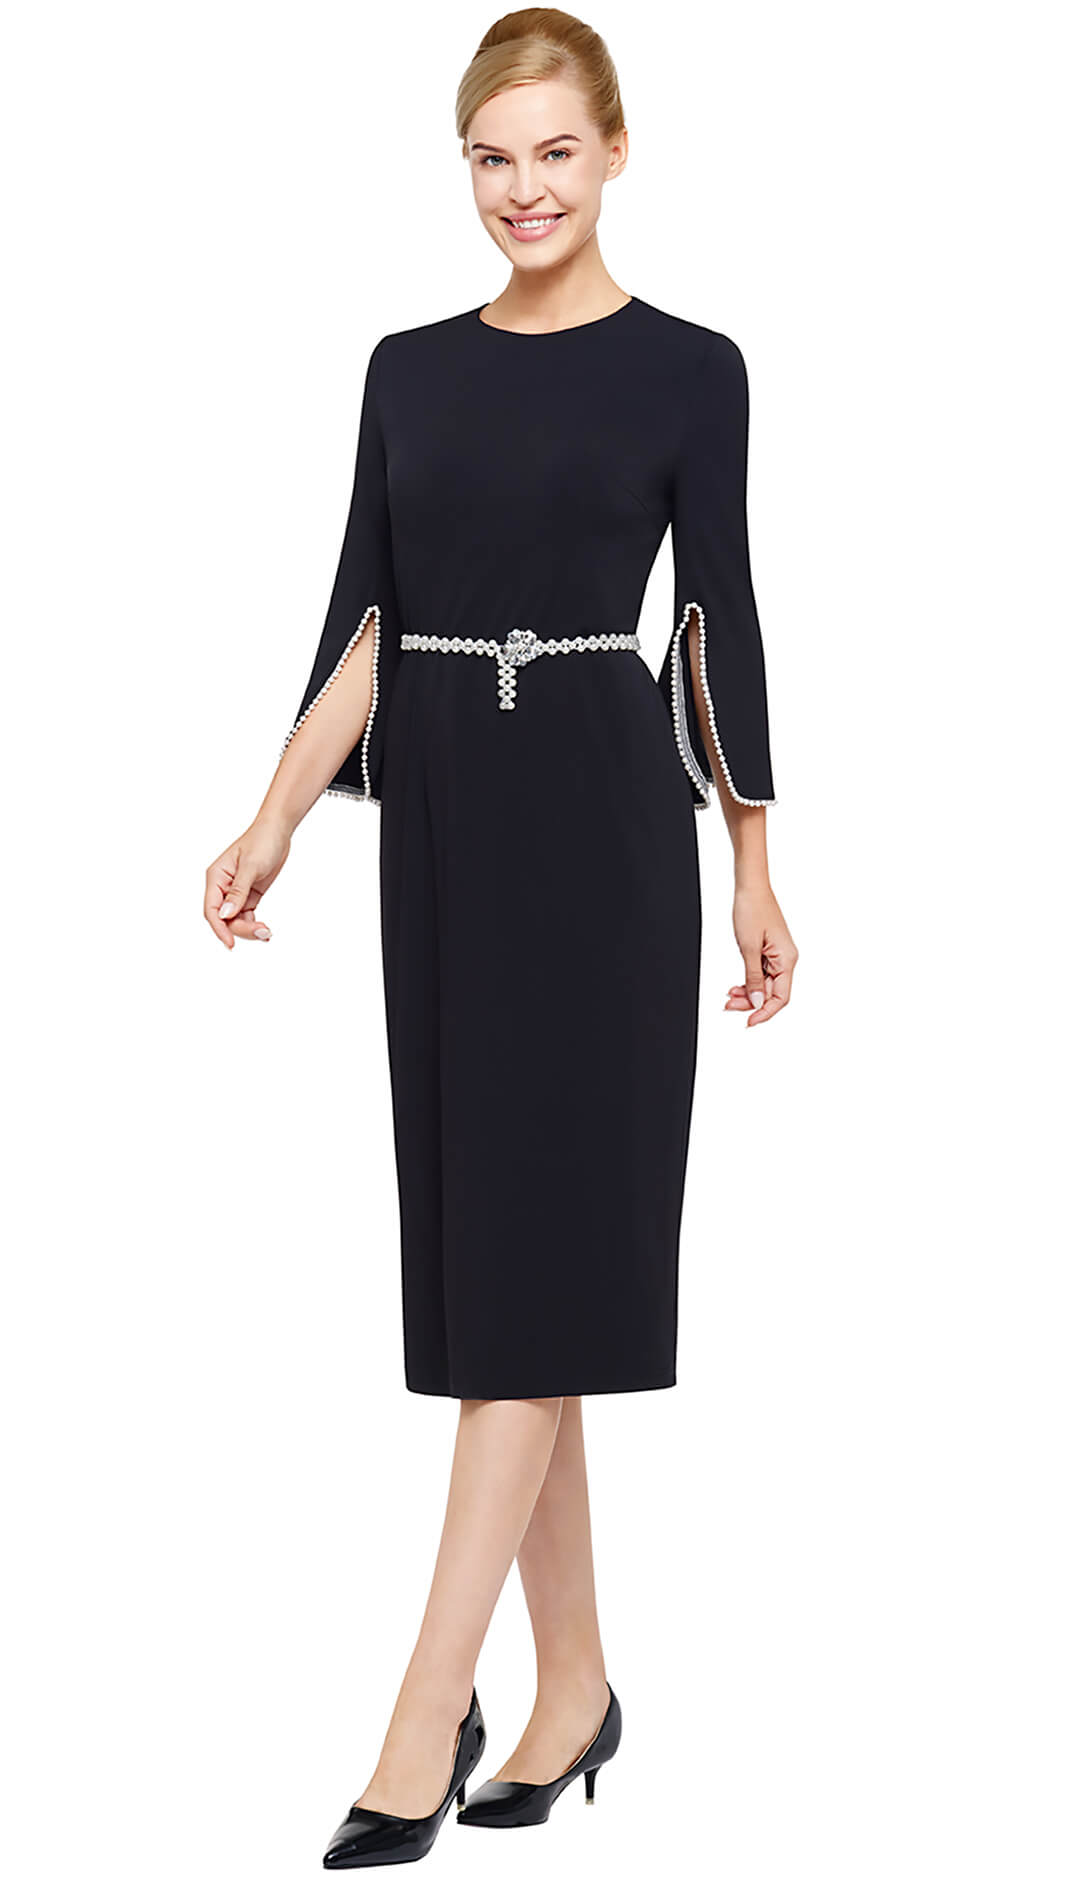 Nina Nischelle Church Dress 2992 - Church Suits For Less